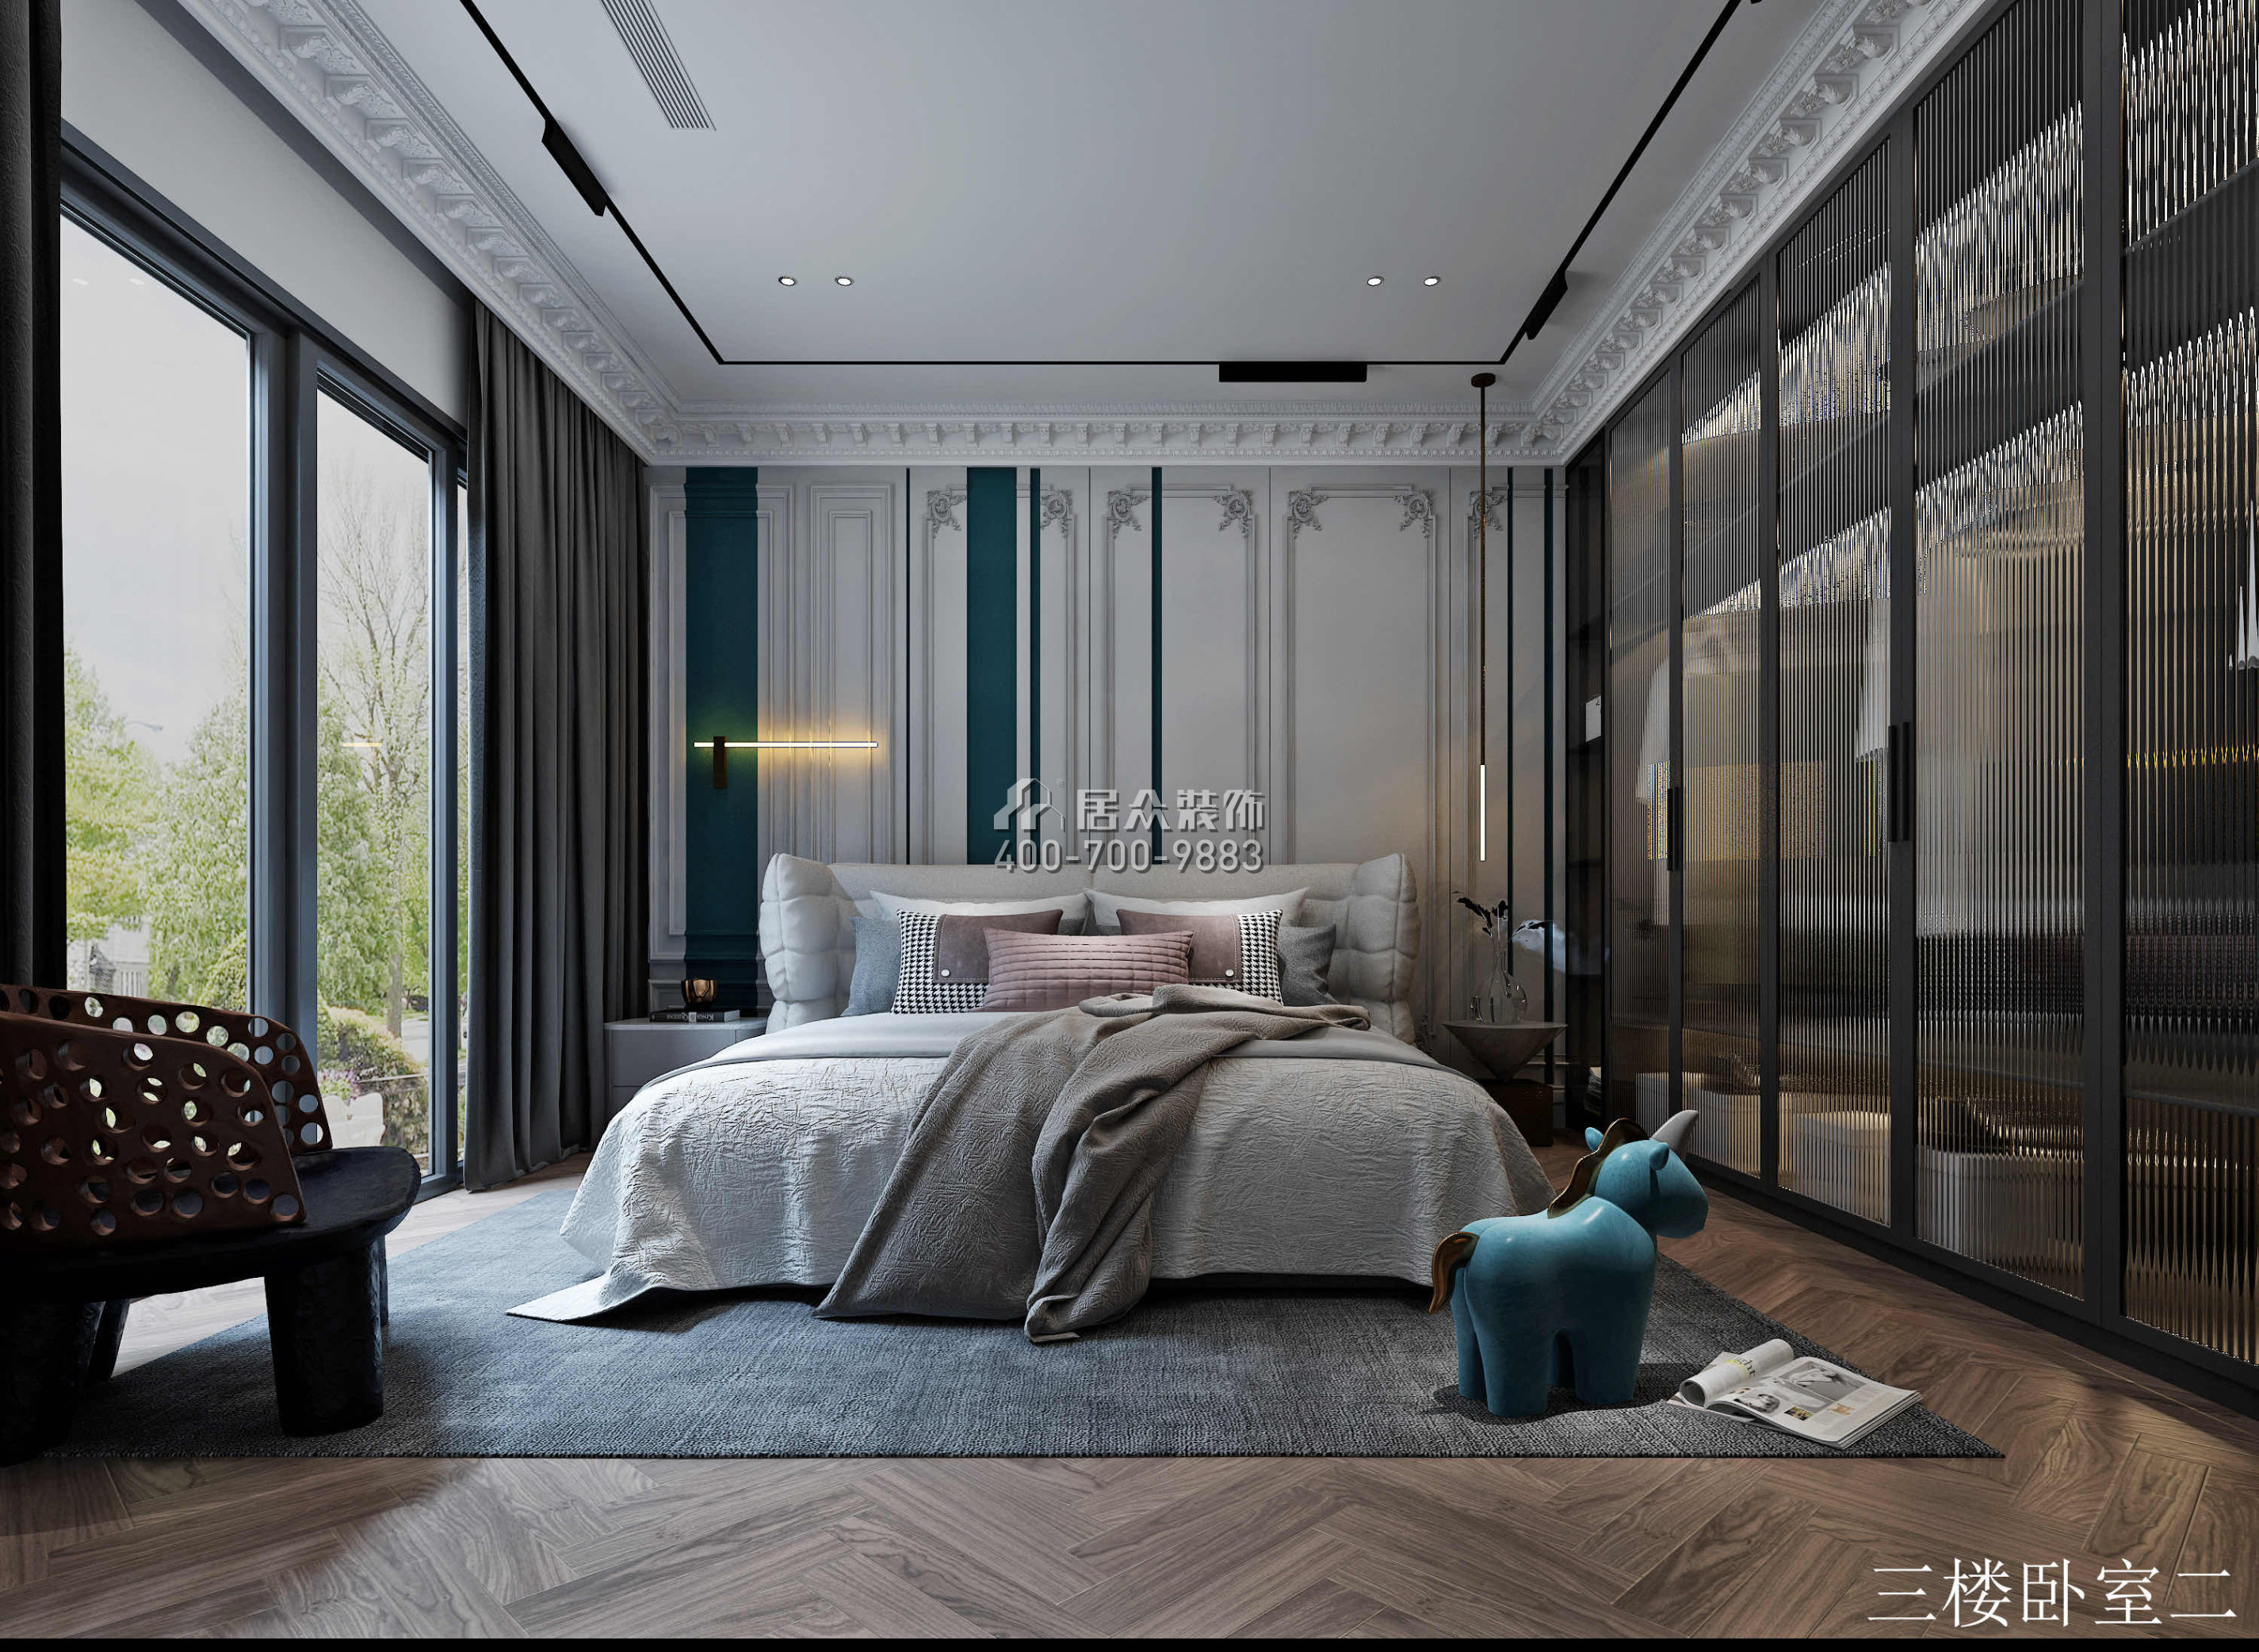 葡萄庄园800平方米欧式风格别墅户型卧室装修效果图